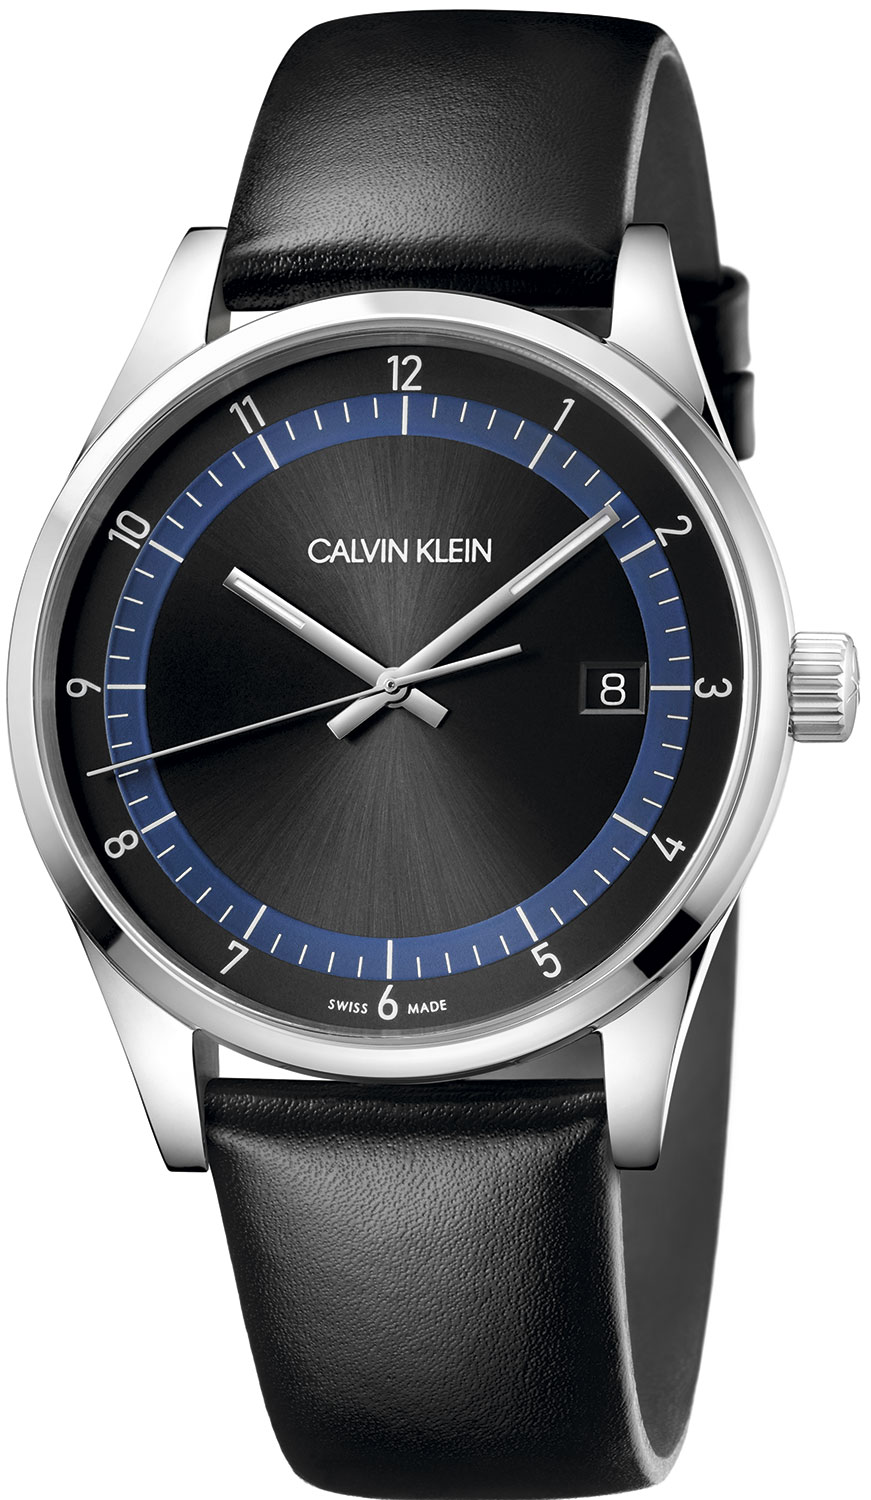 Швейцарские наручные часы Calvin Klein KAM211C1